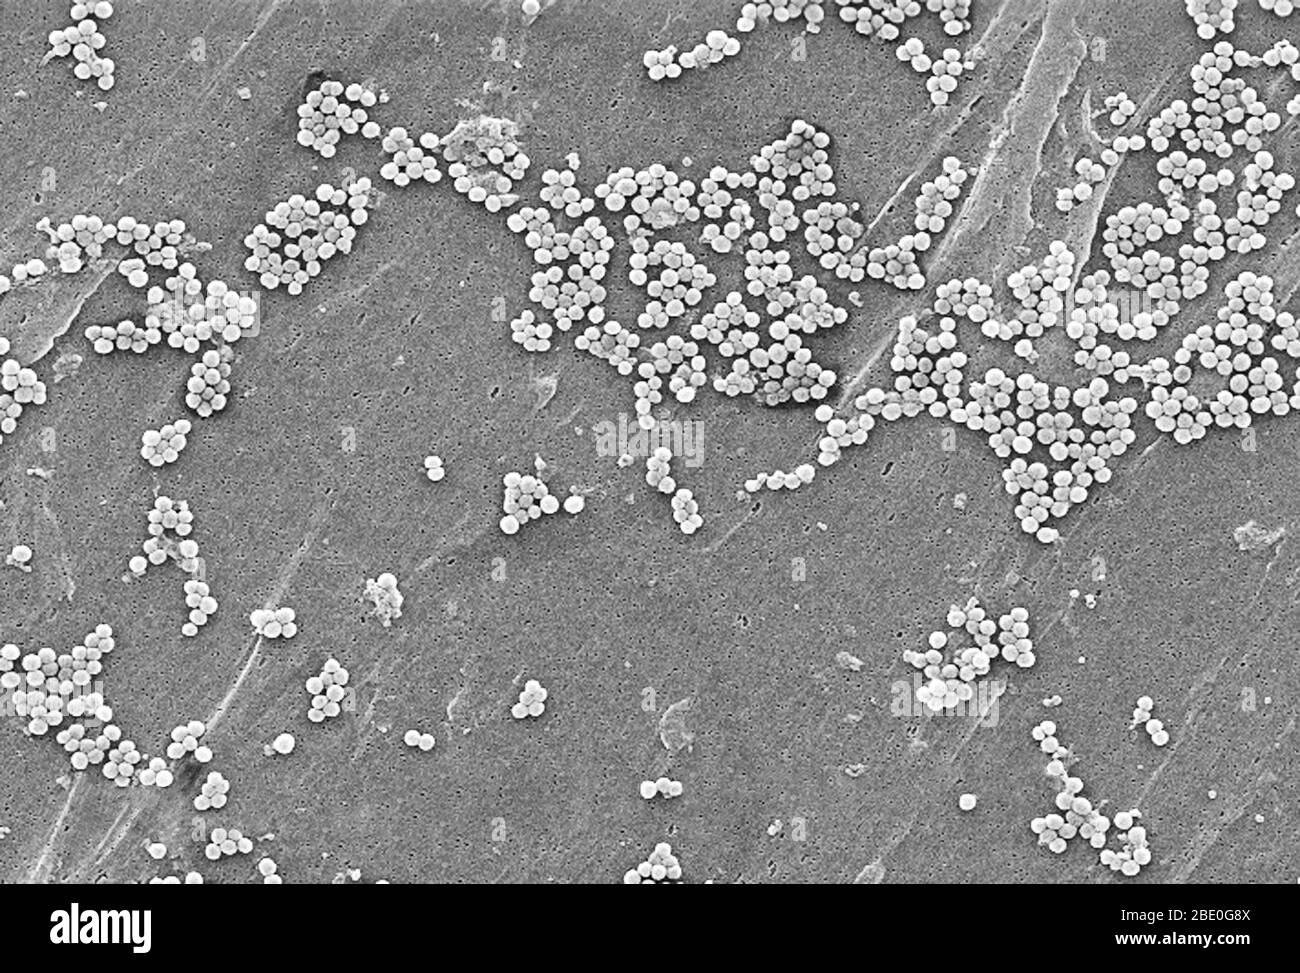 Este micrográfico electrónico de barrido representa una agrupación de bacterias Staphylococcus aureus resistentes a la meticilina (MRSA). Son de uno de los primeros aislados en los Estados Unidos que mostraron mayor resistencia a la vancomicina también. Observe el aumento en el material de la pared celular visto como grupos en la superficie del organismo. Los brotes o conglomerados de SARM recientemente reconocidos en entornos comunitarios se han asociado a cepas que tienen propiedades microbiológicas y genéticas únicas en comparación con las cepas de SARM tradicionales de origen hospitalario. Esto sugiere que algunas propiedades biológicas, por ejemplo, factores de virulencia li Foto de stock